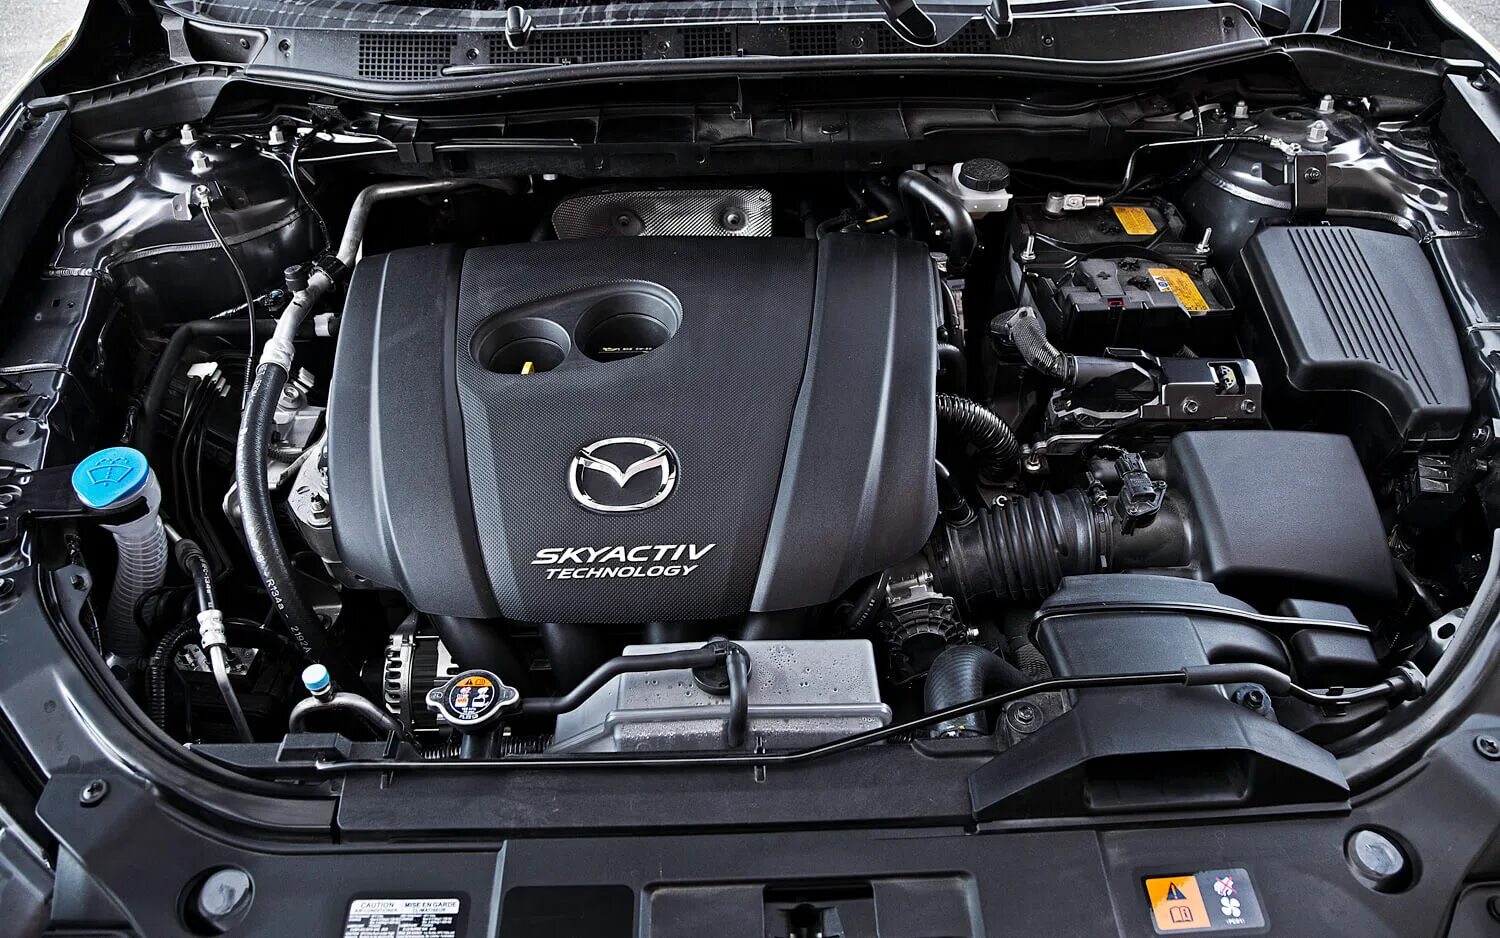 Двигатель мазда сх5 2.0. Мотор Мазда сх5 2.5. Mazda CX-5 двигатель 2.0. Двигатель Мазда cx5 2.5. Двигатель Мазда СХ 5.